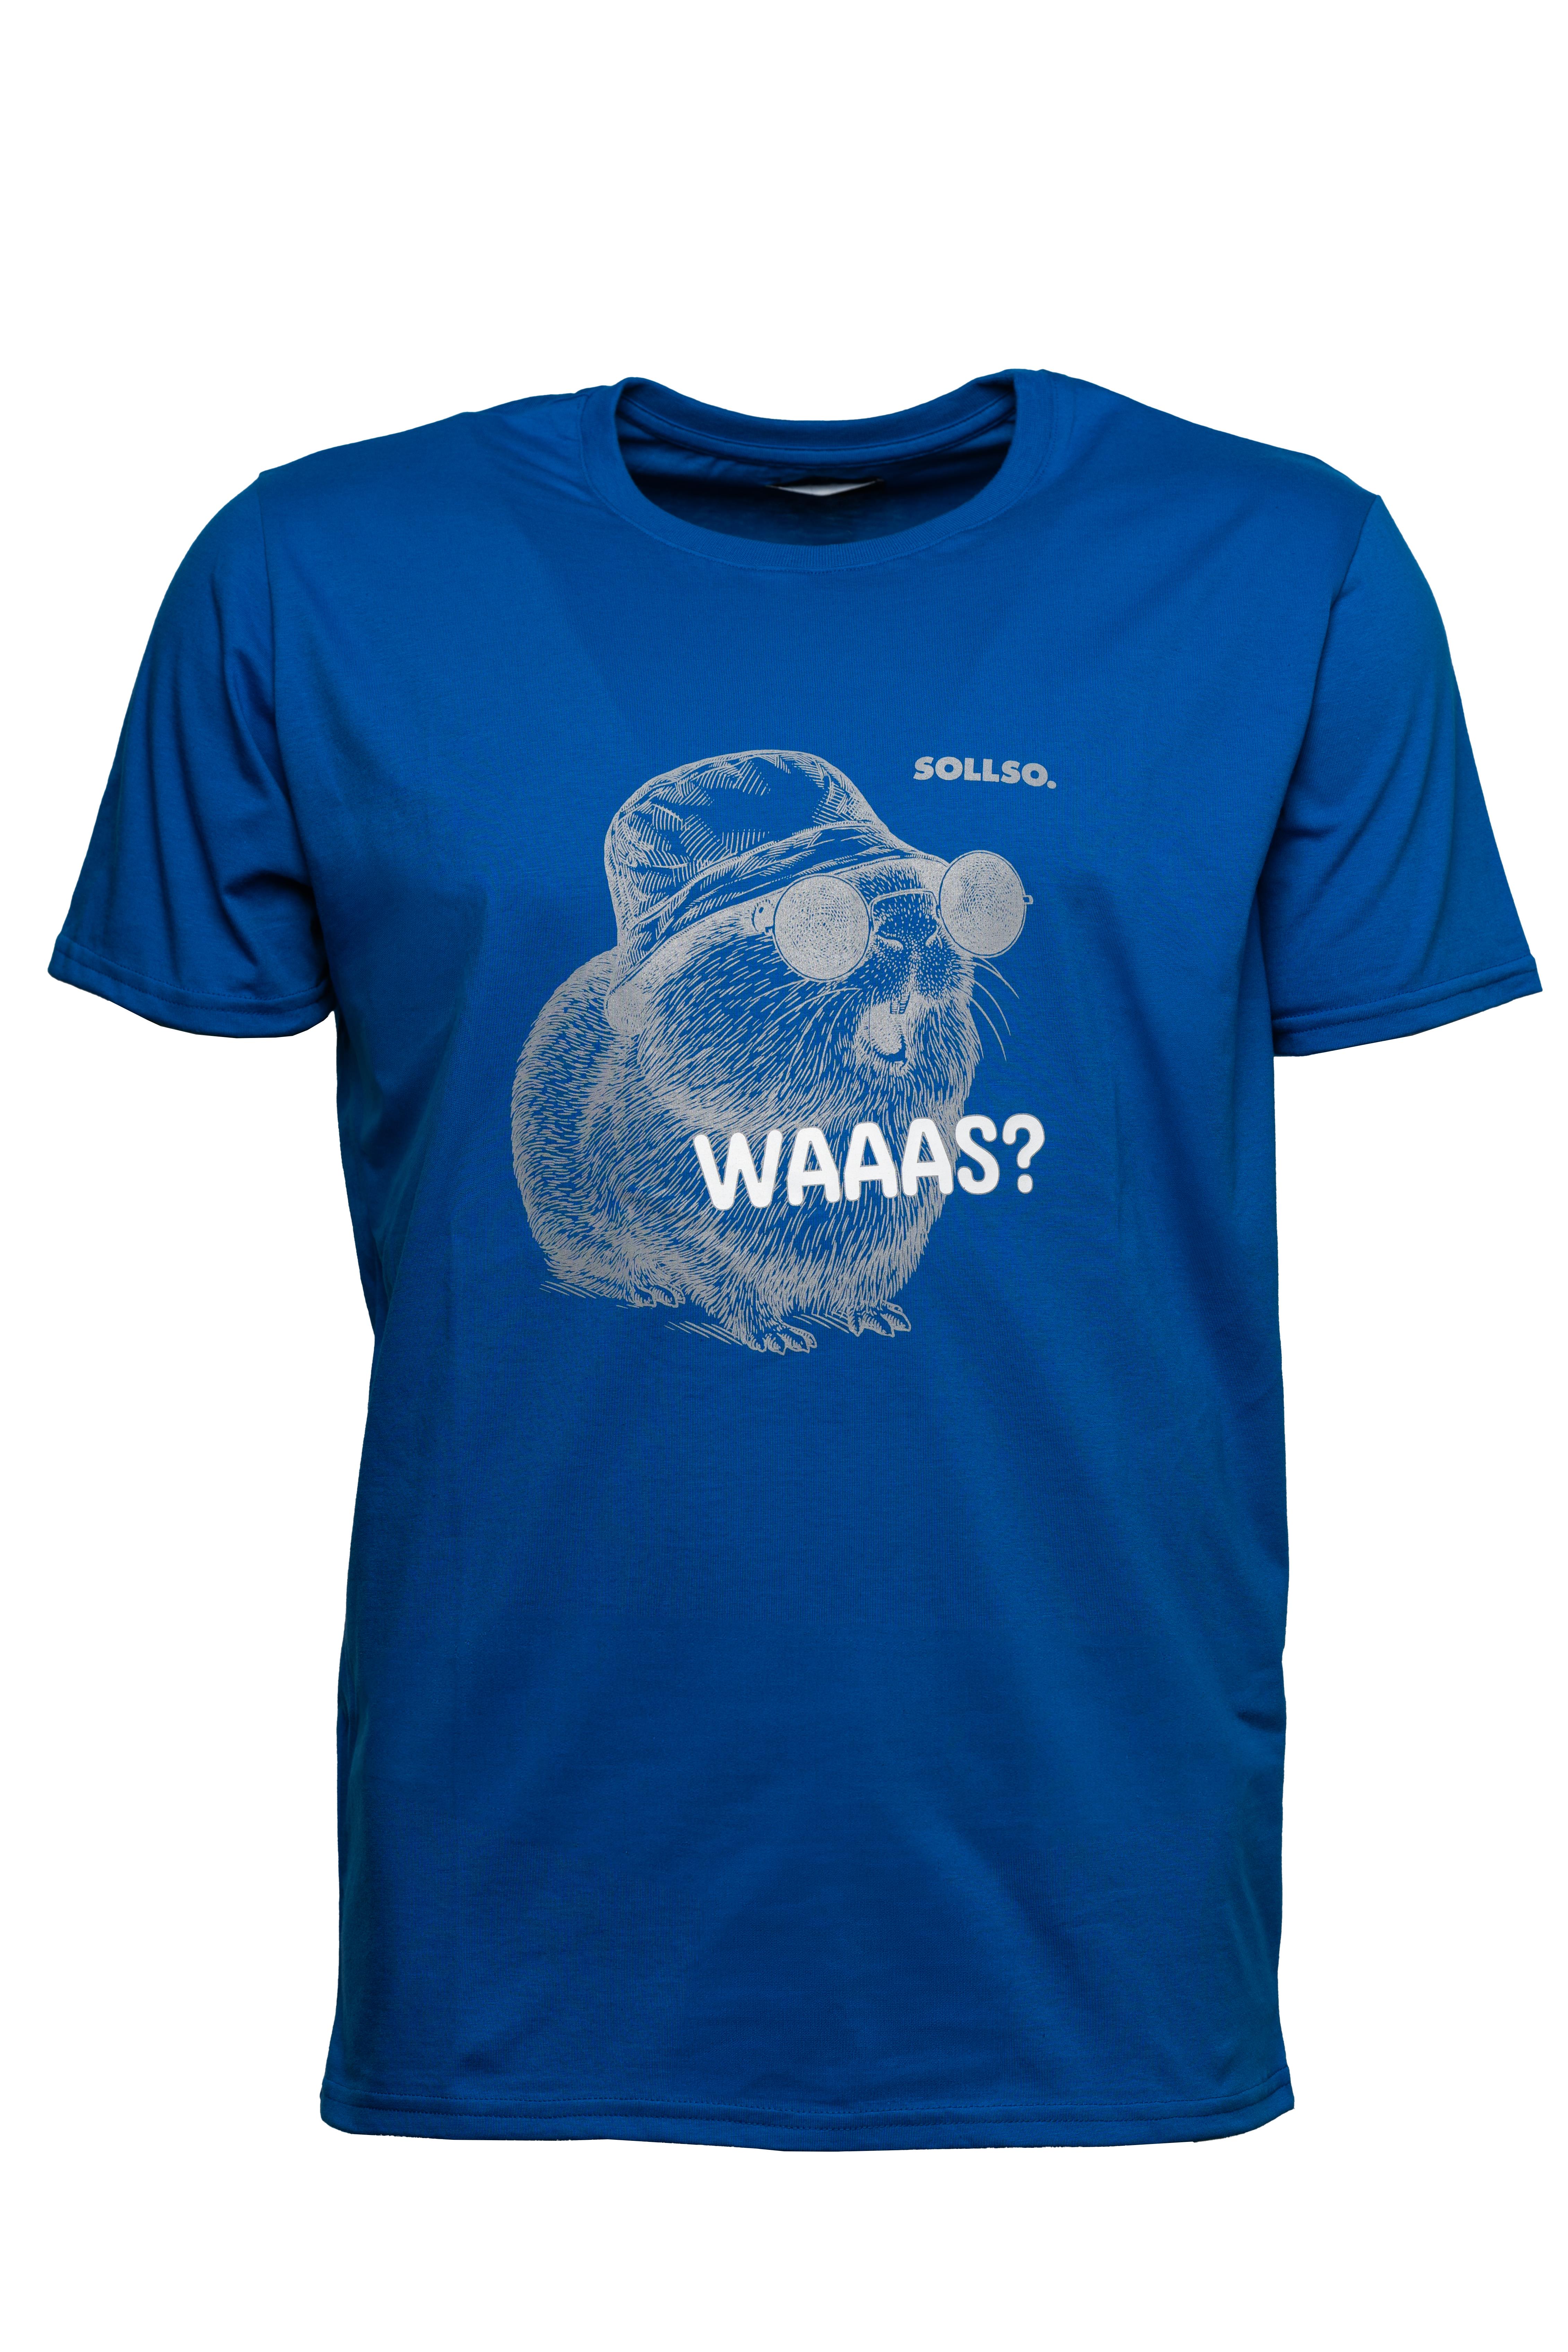 SOLLSO. T-Shirt "Guinea Pig" Farbe Ocean Blue, Größe XXL